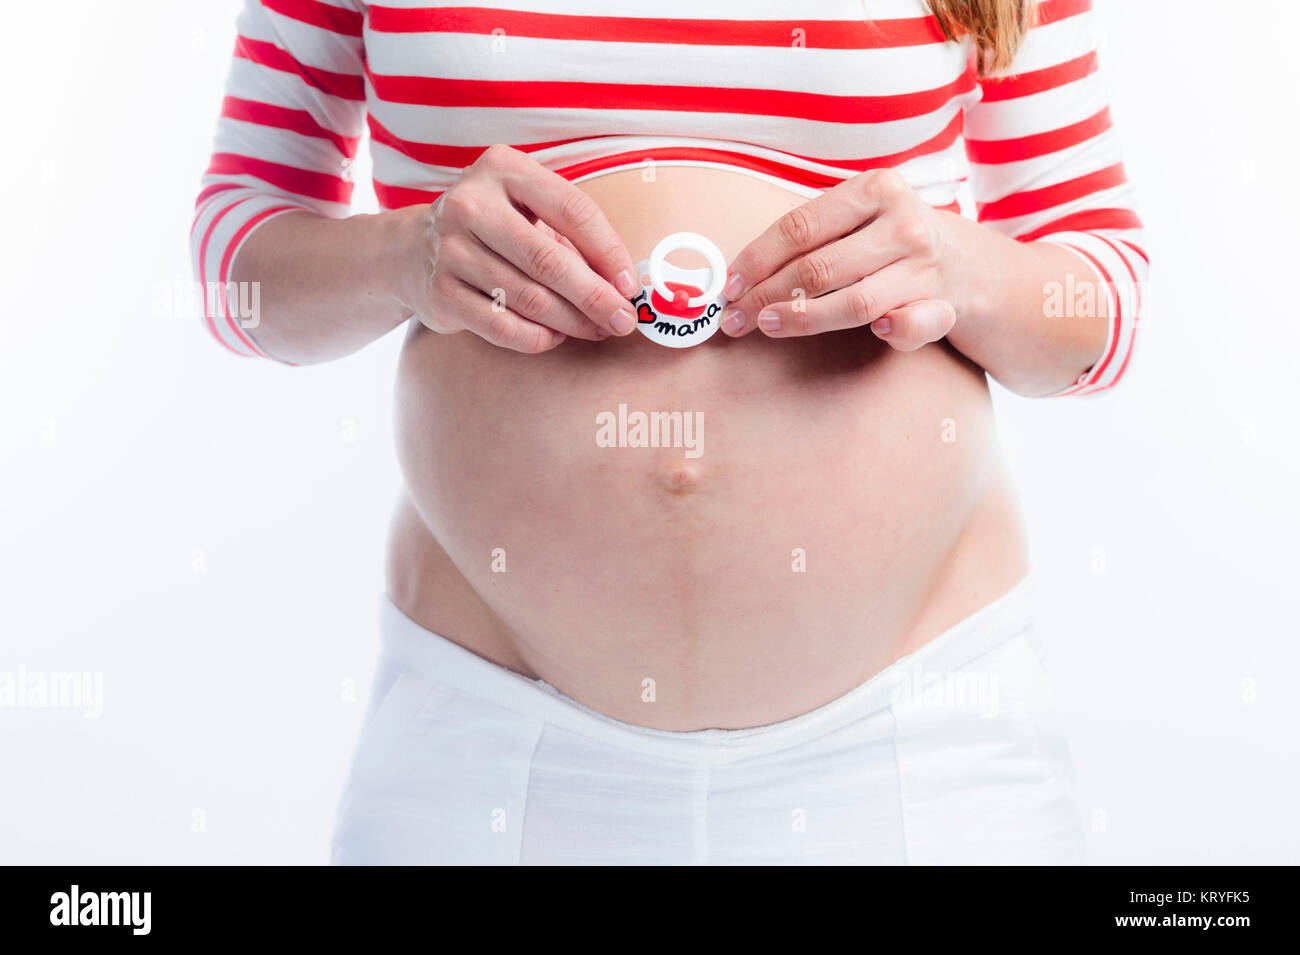 Schwangere Frau mit Schnuller am Babybauch - donna incinta con fantoccio Foto Stock